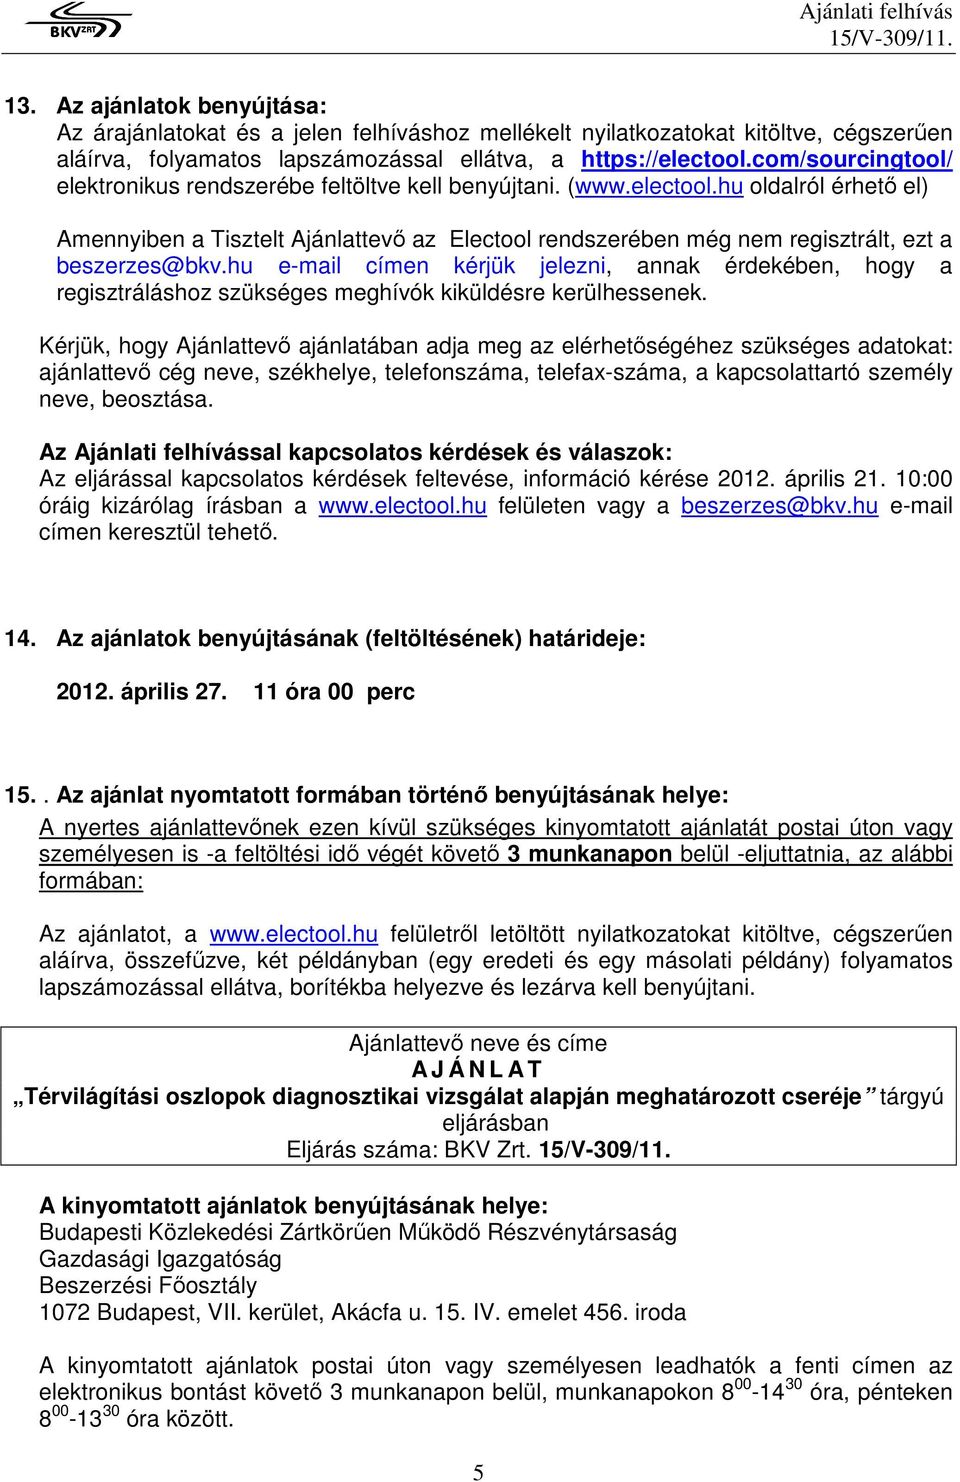 hu oldalról érhetı el) Amennyiben a Tisztelt Ajánlattevı az Electool rendszerében még nem regisztrált, ezt a beszerzes@bkv.